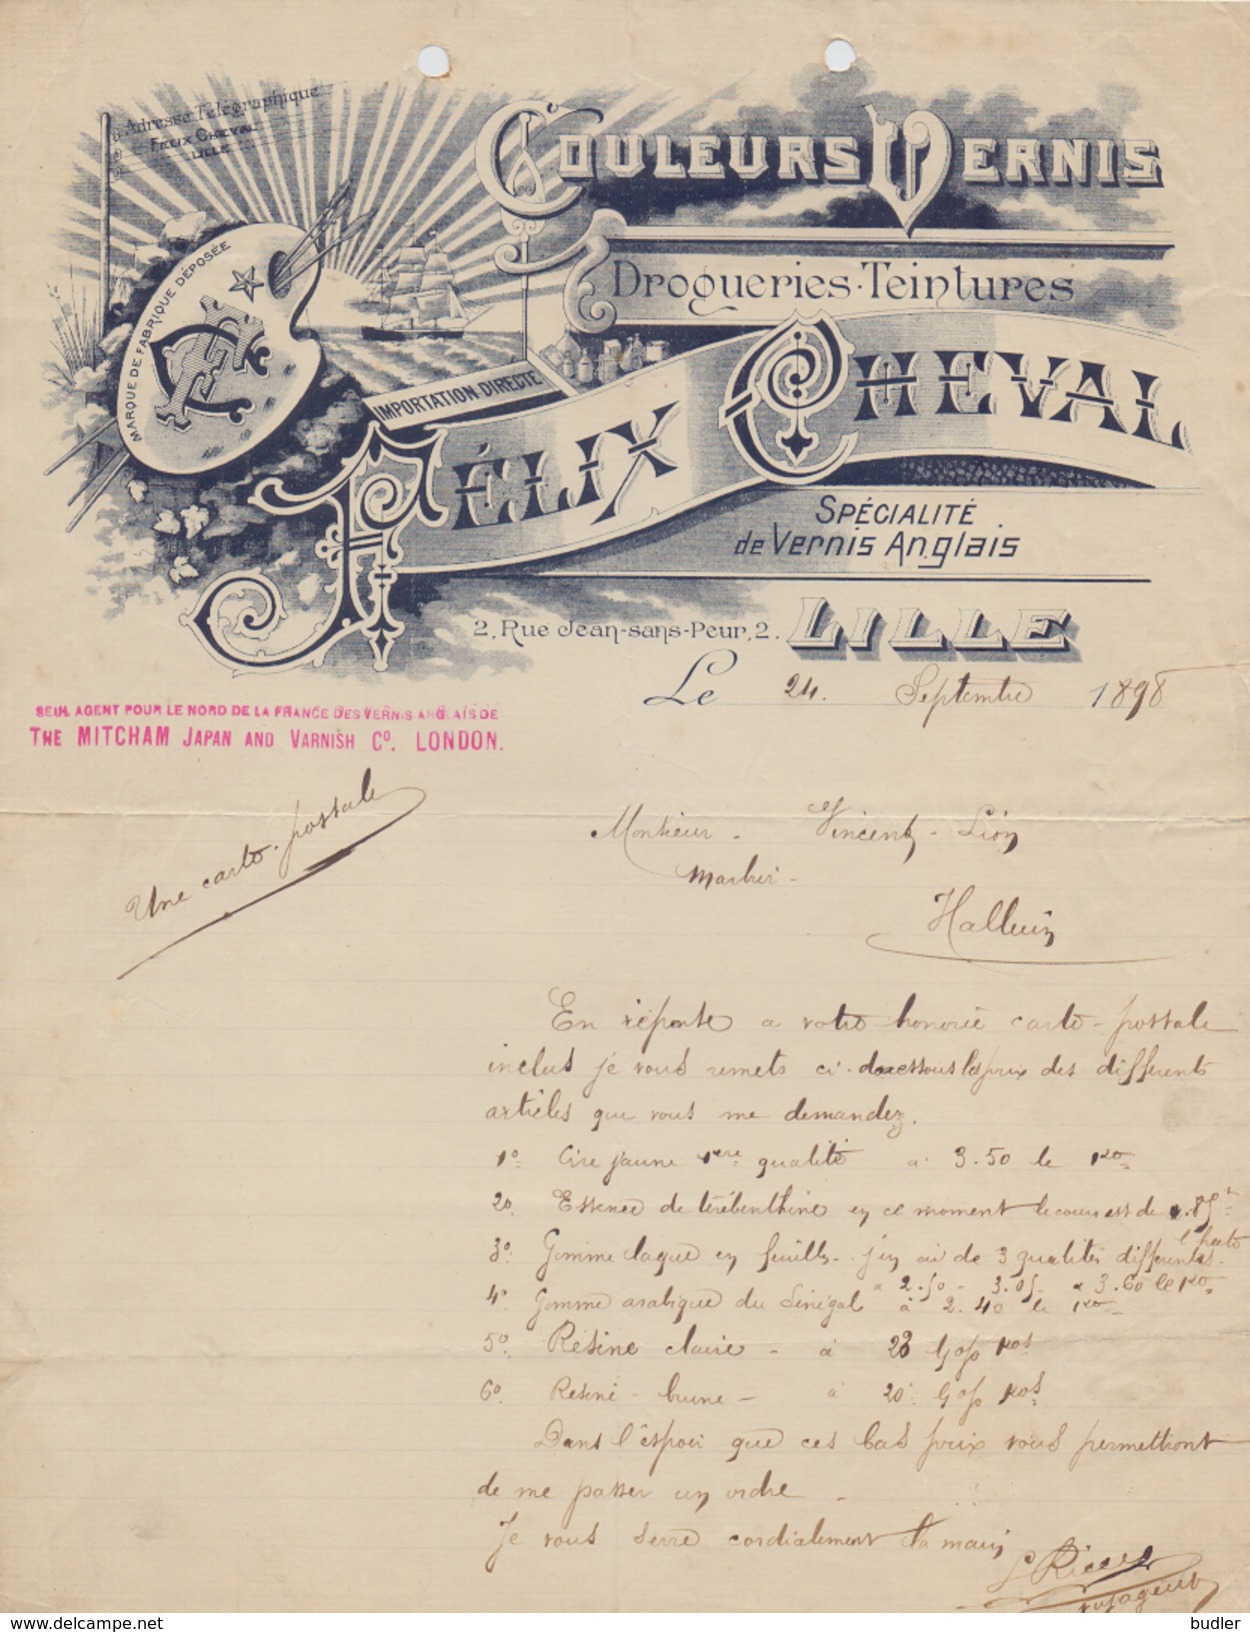 FRANCE :1898: ## Couleurs Vernis FÉLIX CHEVAL, Lille ## à ## Vincent Léon, Halluin ## : SAILING VESSEL, - 1800 – 1899